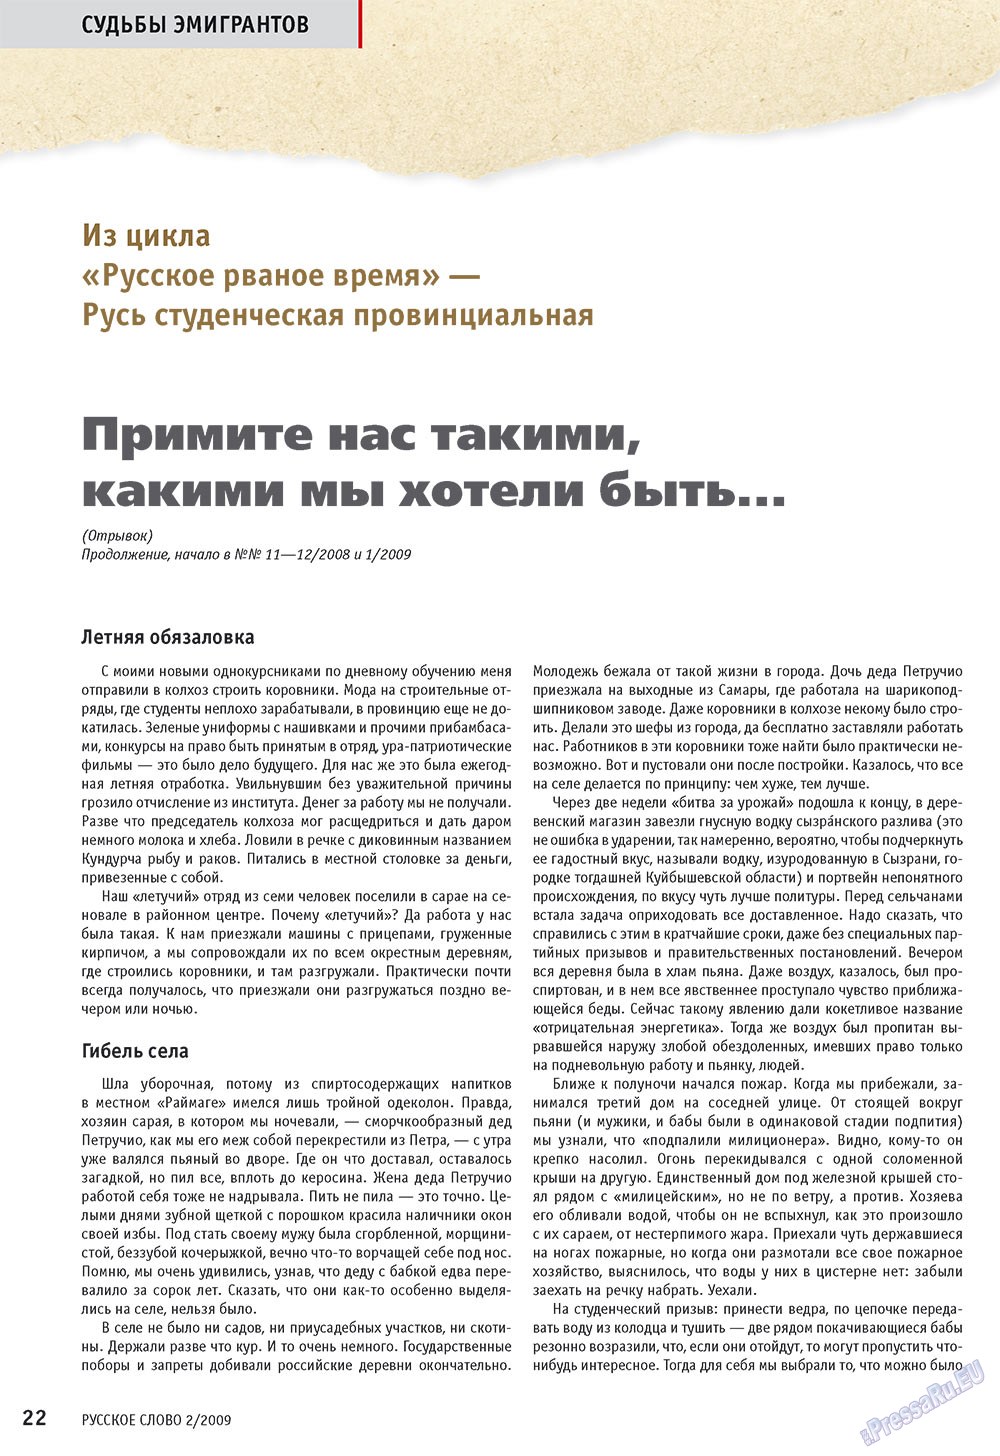 Русское слово, журнал. 2009 №2 стр.24